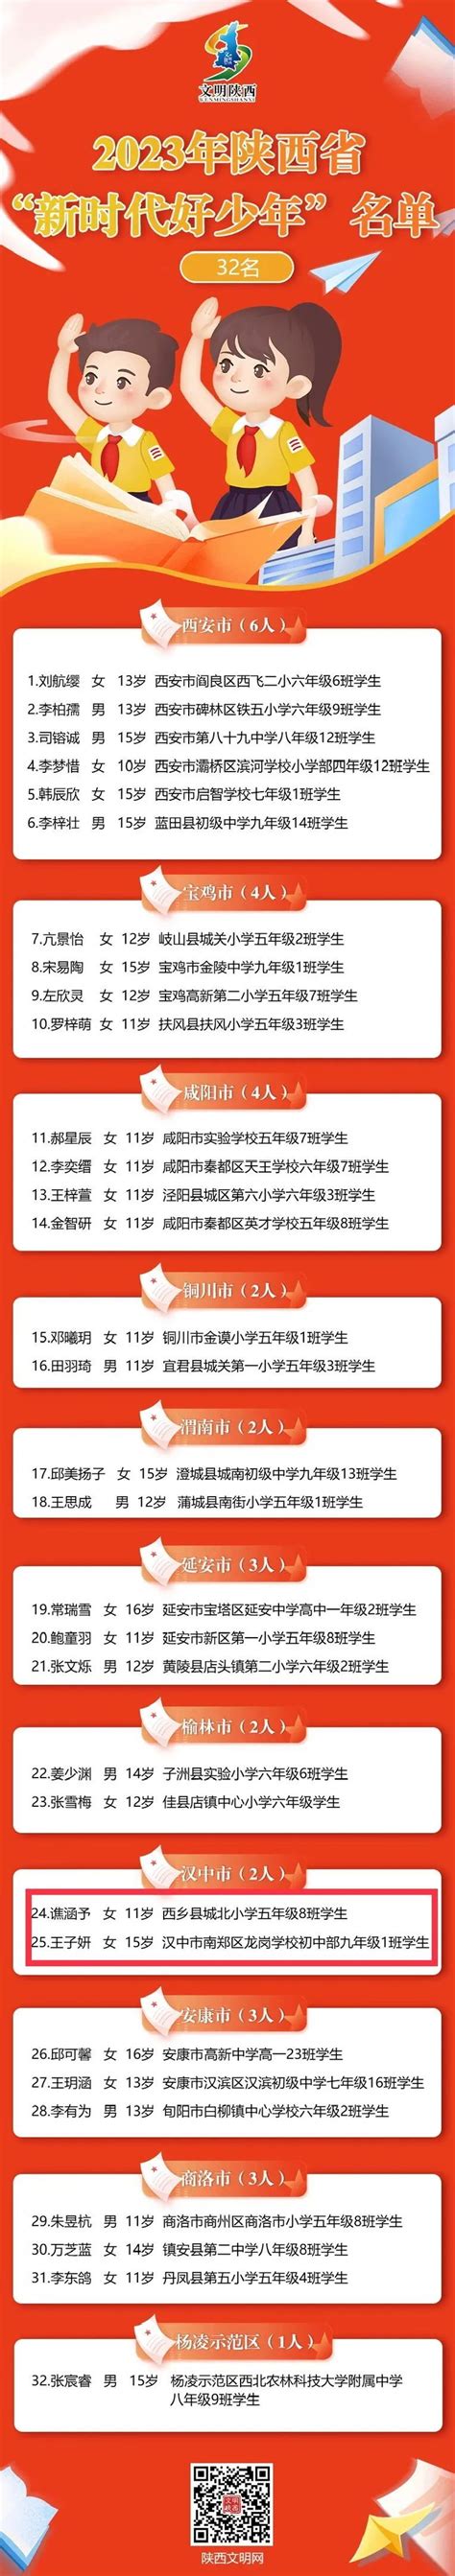 2019中国最美油菜花海汉中旅游文化节即将开幕 - 丝路中国 - 中国网